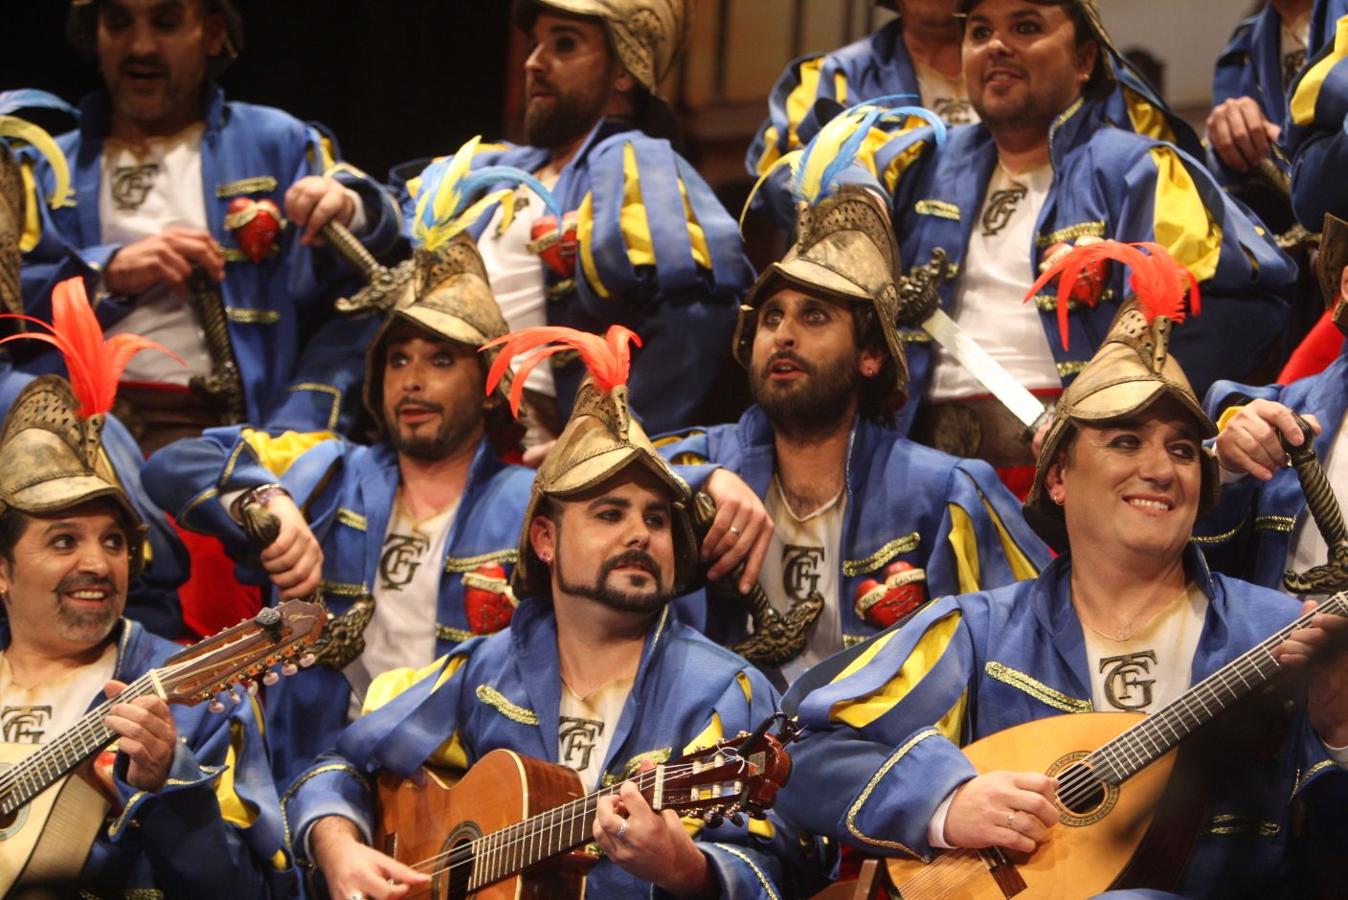 FOTOS: coro El conquistador en Preliminares del COAC del Carnaval de Cádiz 2018